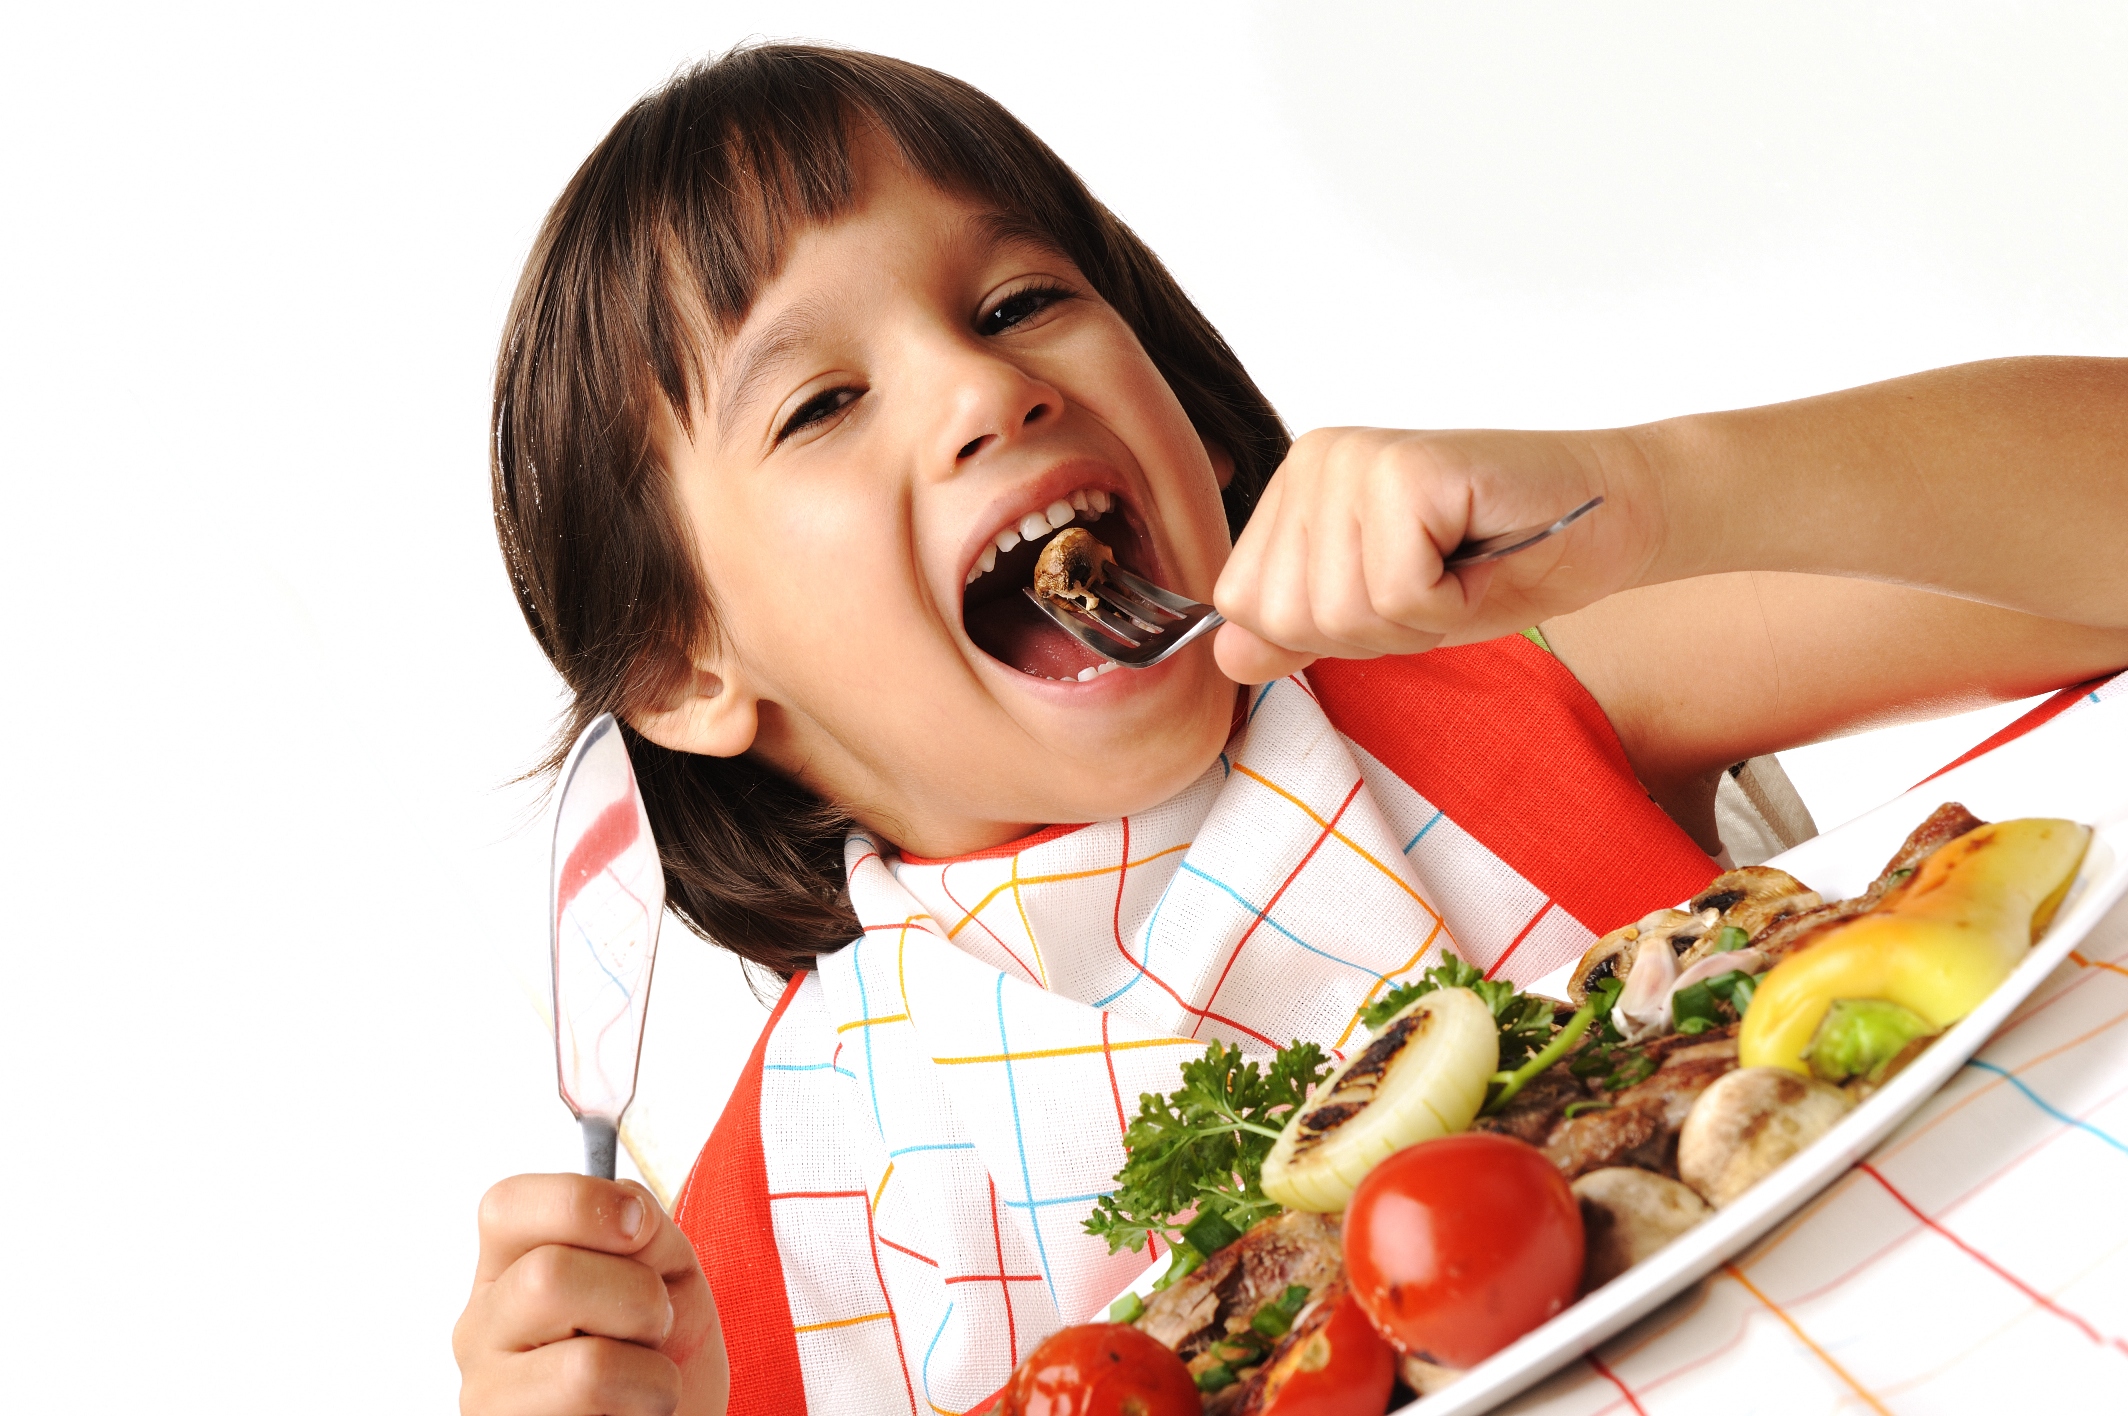 Совсем нет аппетита. Еда для детей. Ребенок ест. Питание детей. Здоровое питание для детей.